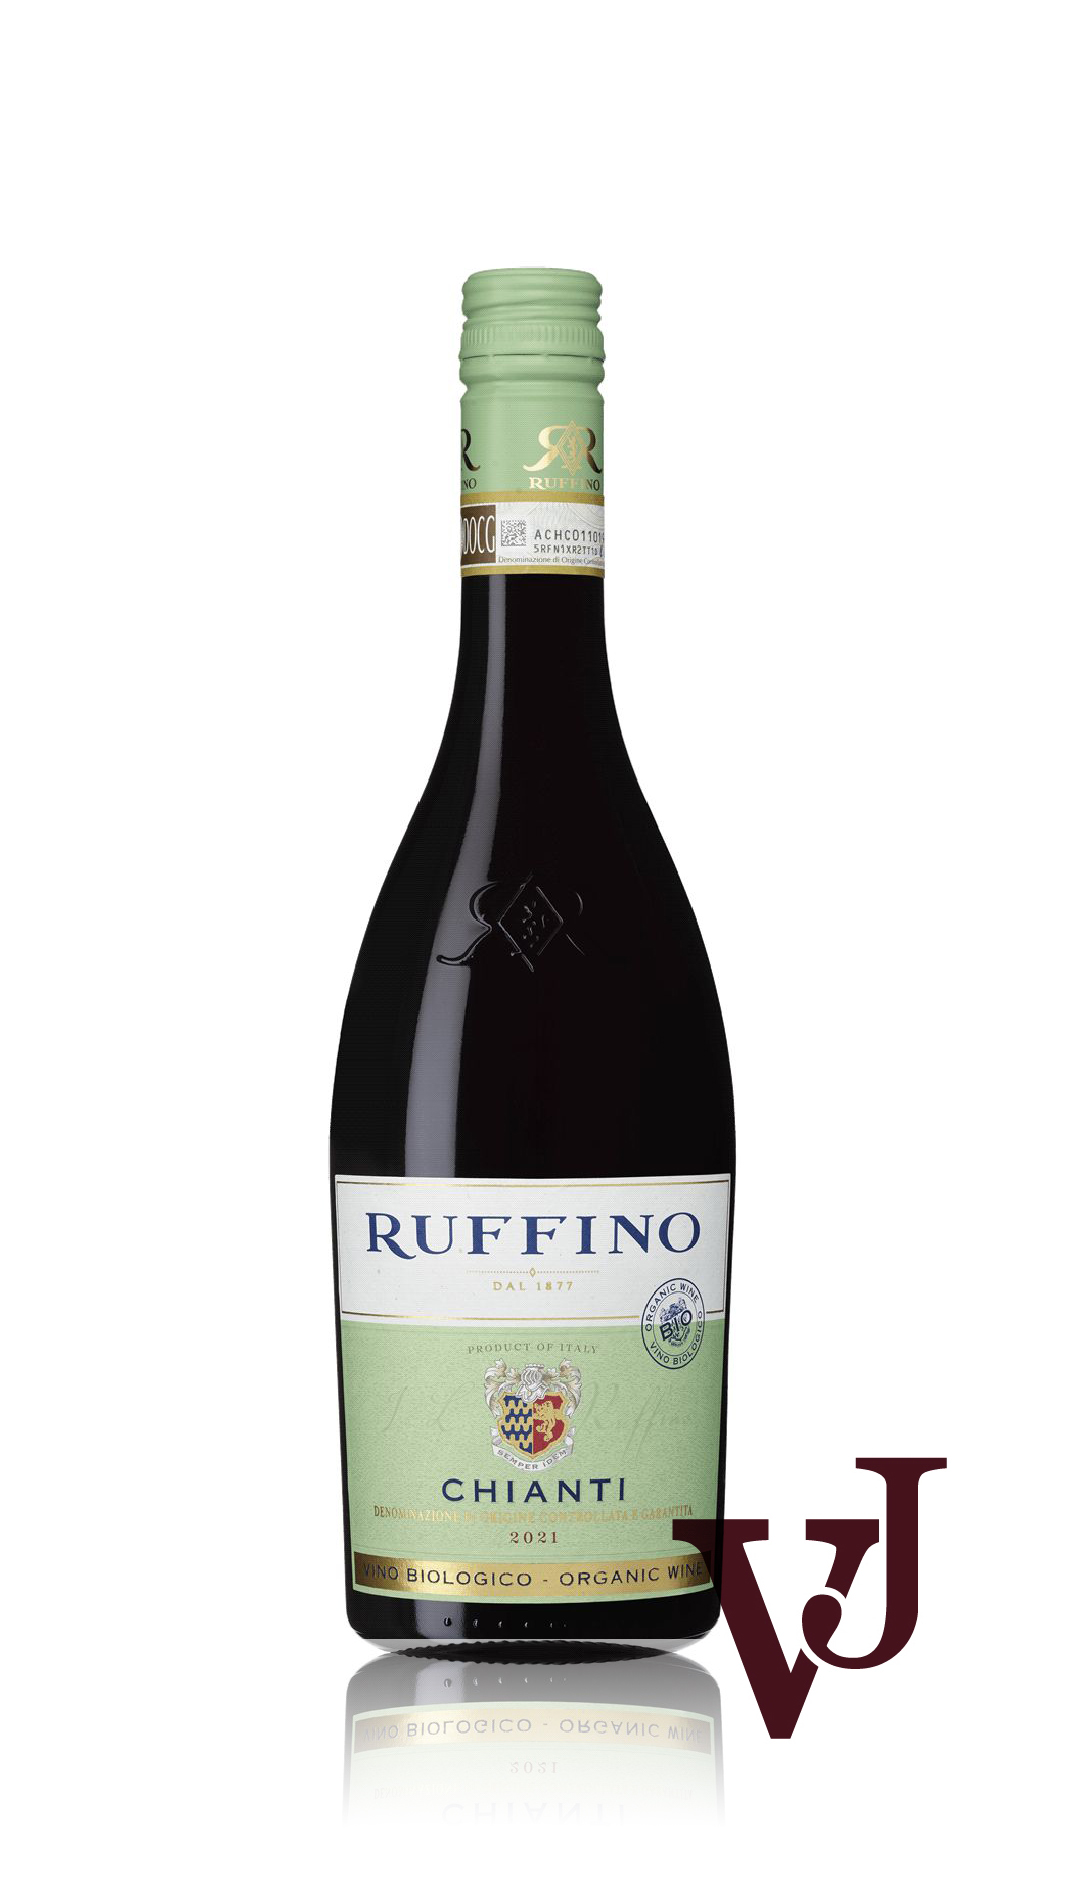 Rött Vin - Ruffino Chianti artikel nummer 231001 från producenten Ruffino från området Italien - Vinjournalen.se